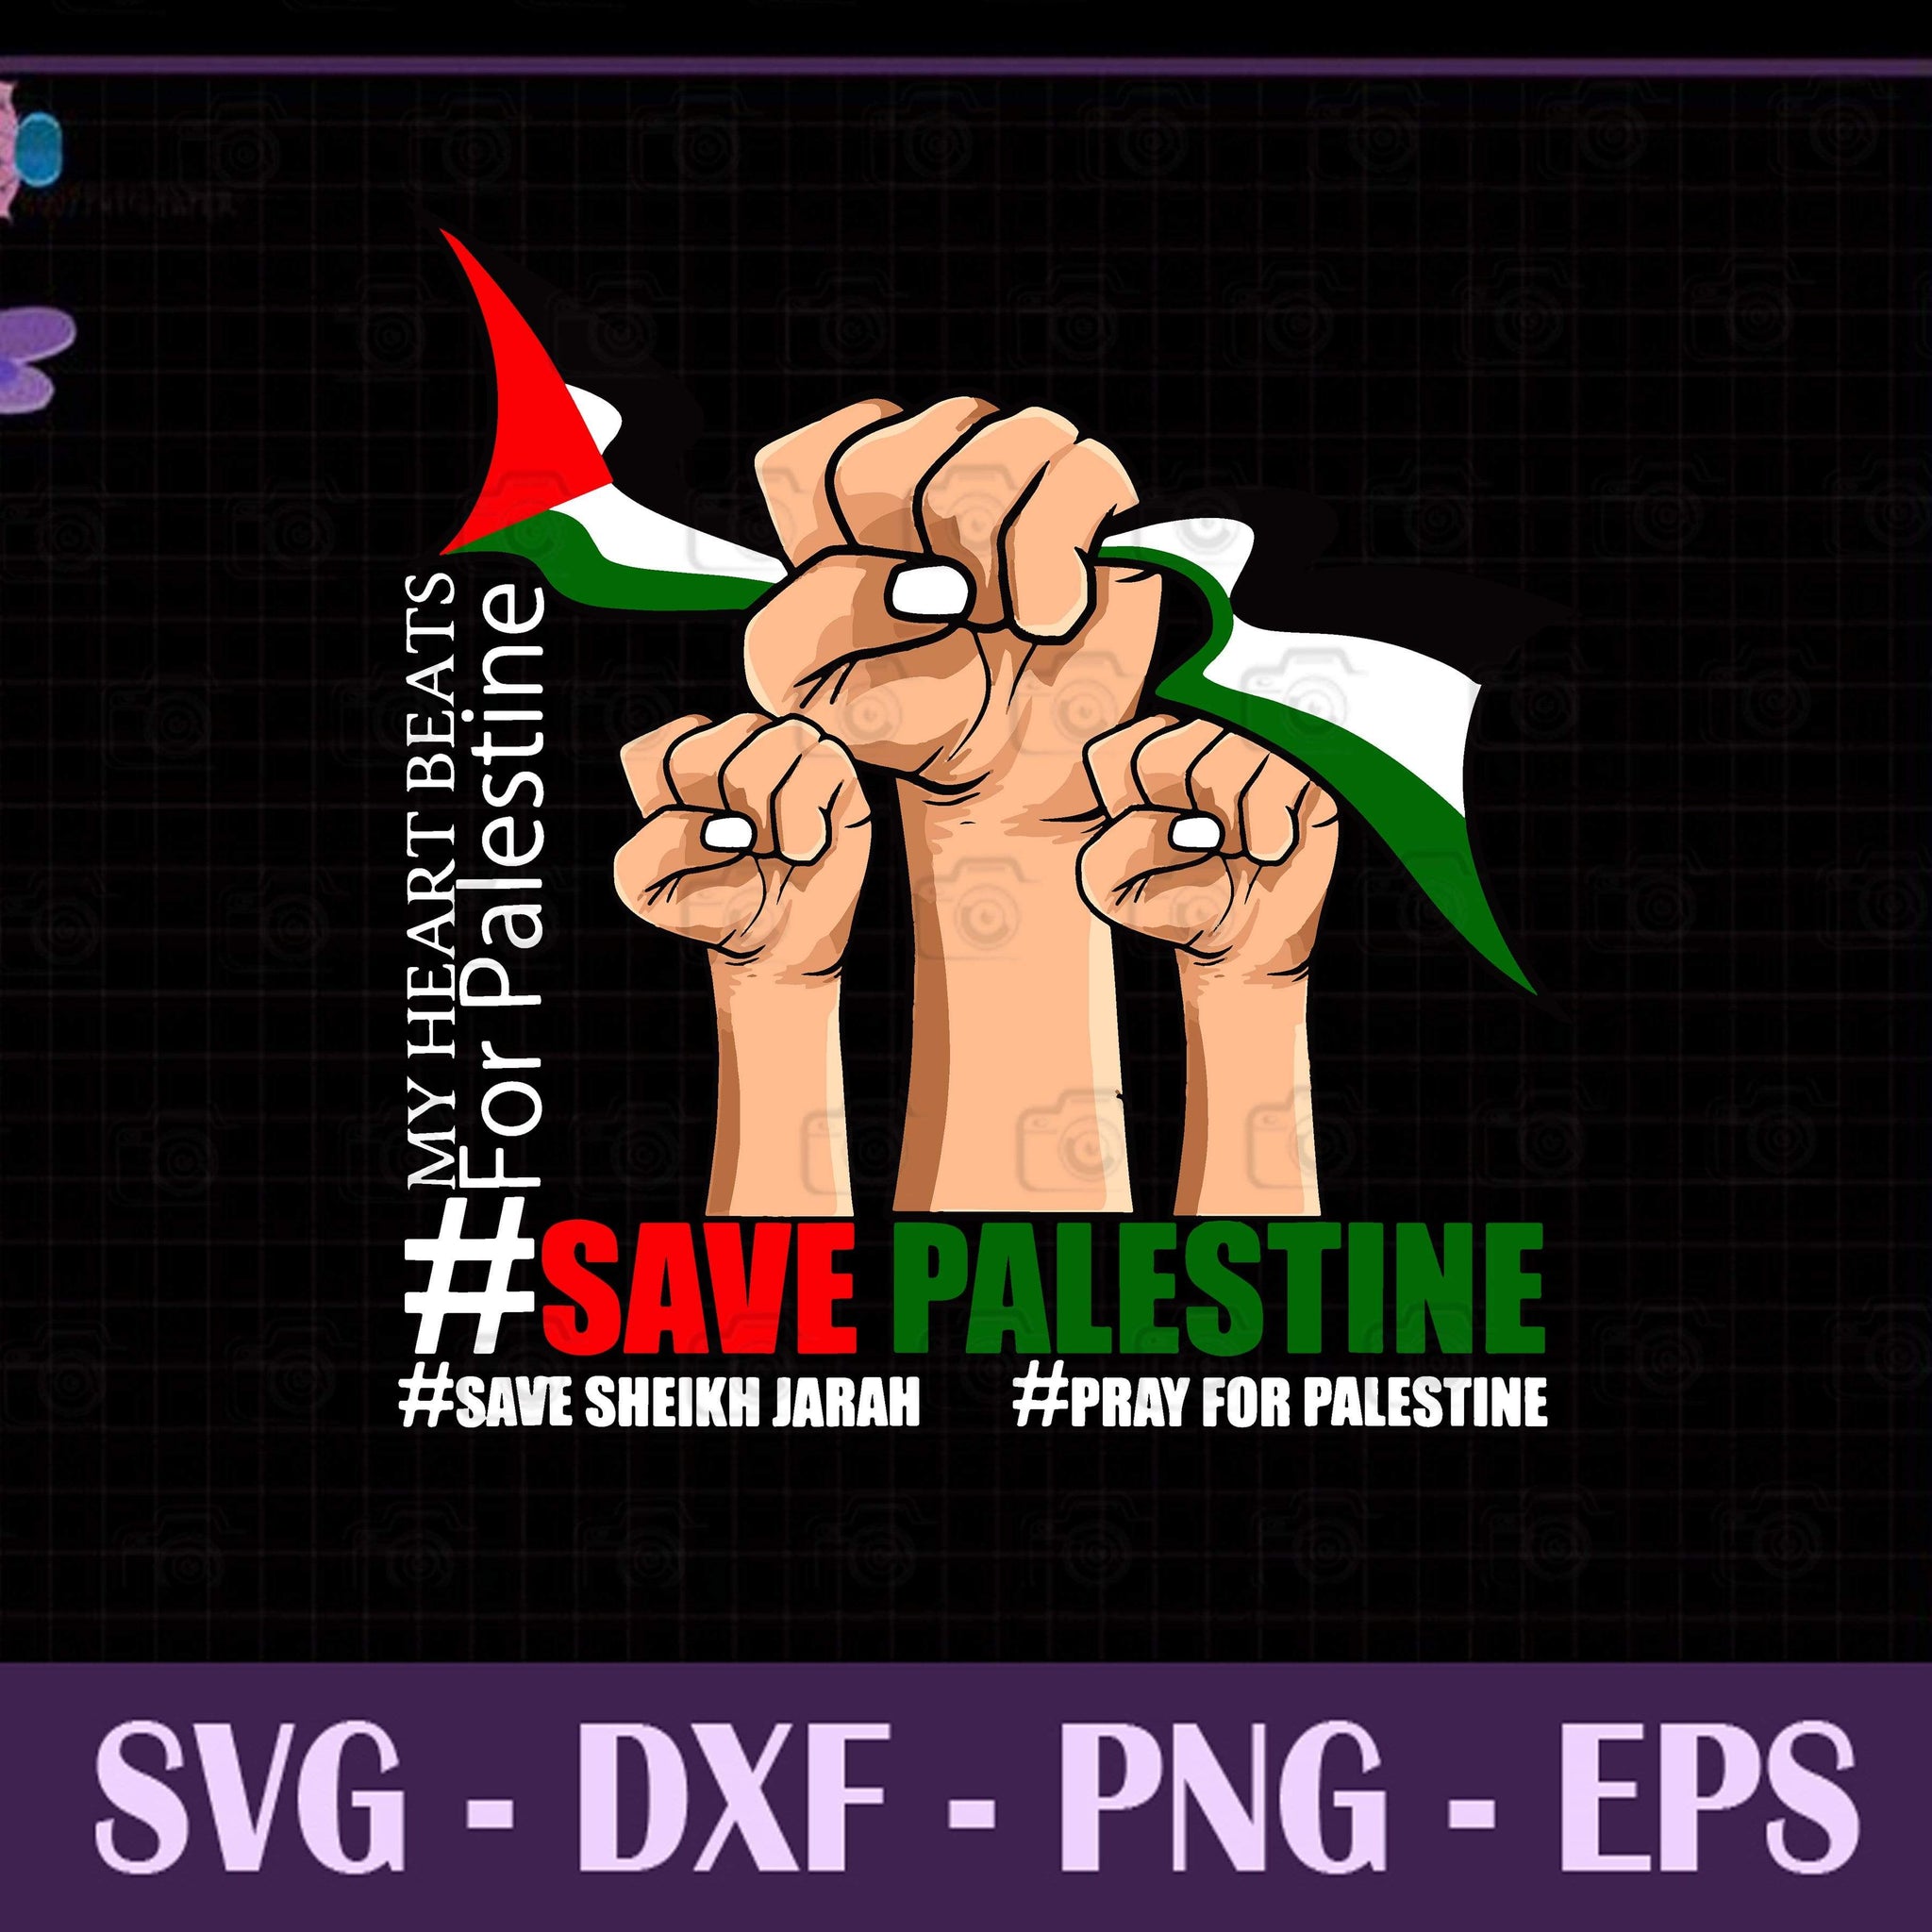 Palestine Flag, Save Palestine, Save Sheikh Jarrah, Pray For Palestine